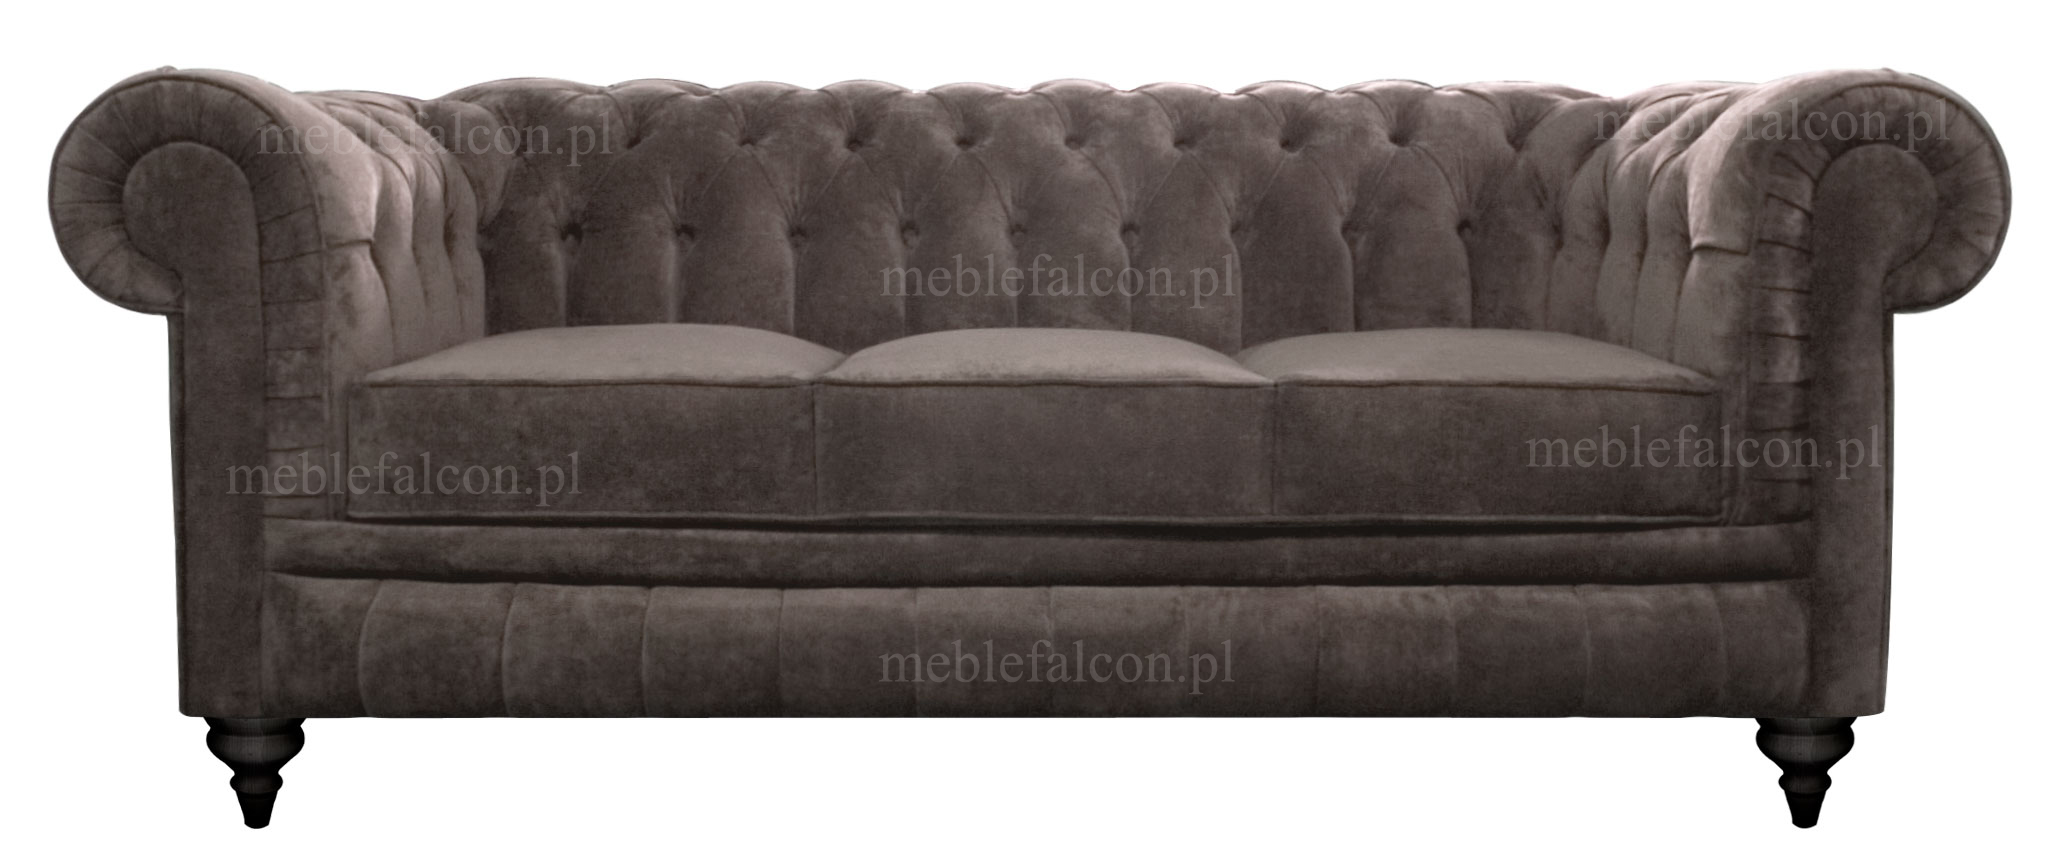 orginalna sofa w stylu angielskim miękkie siedziska bonelowe 